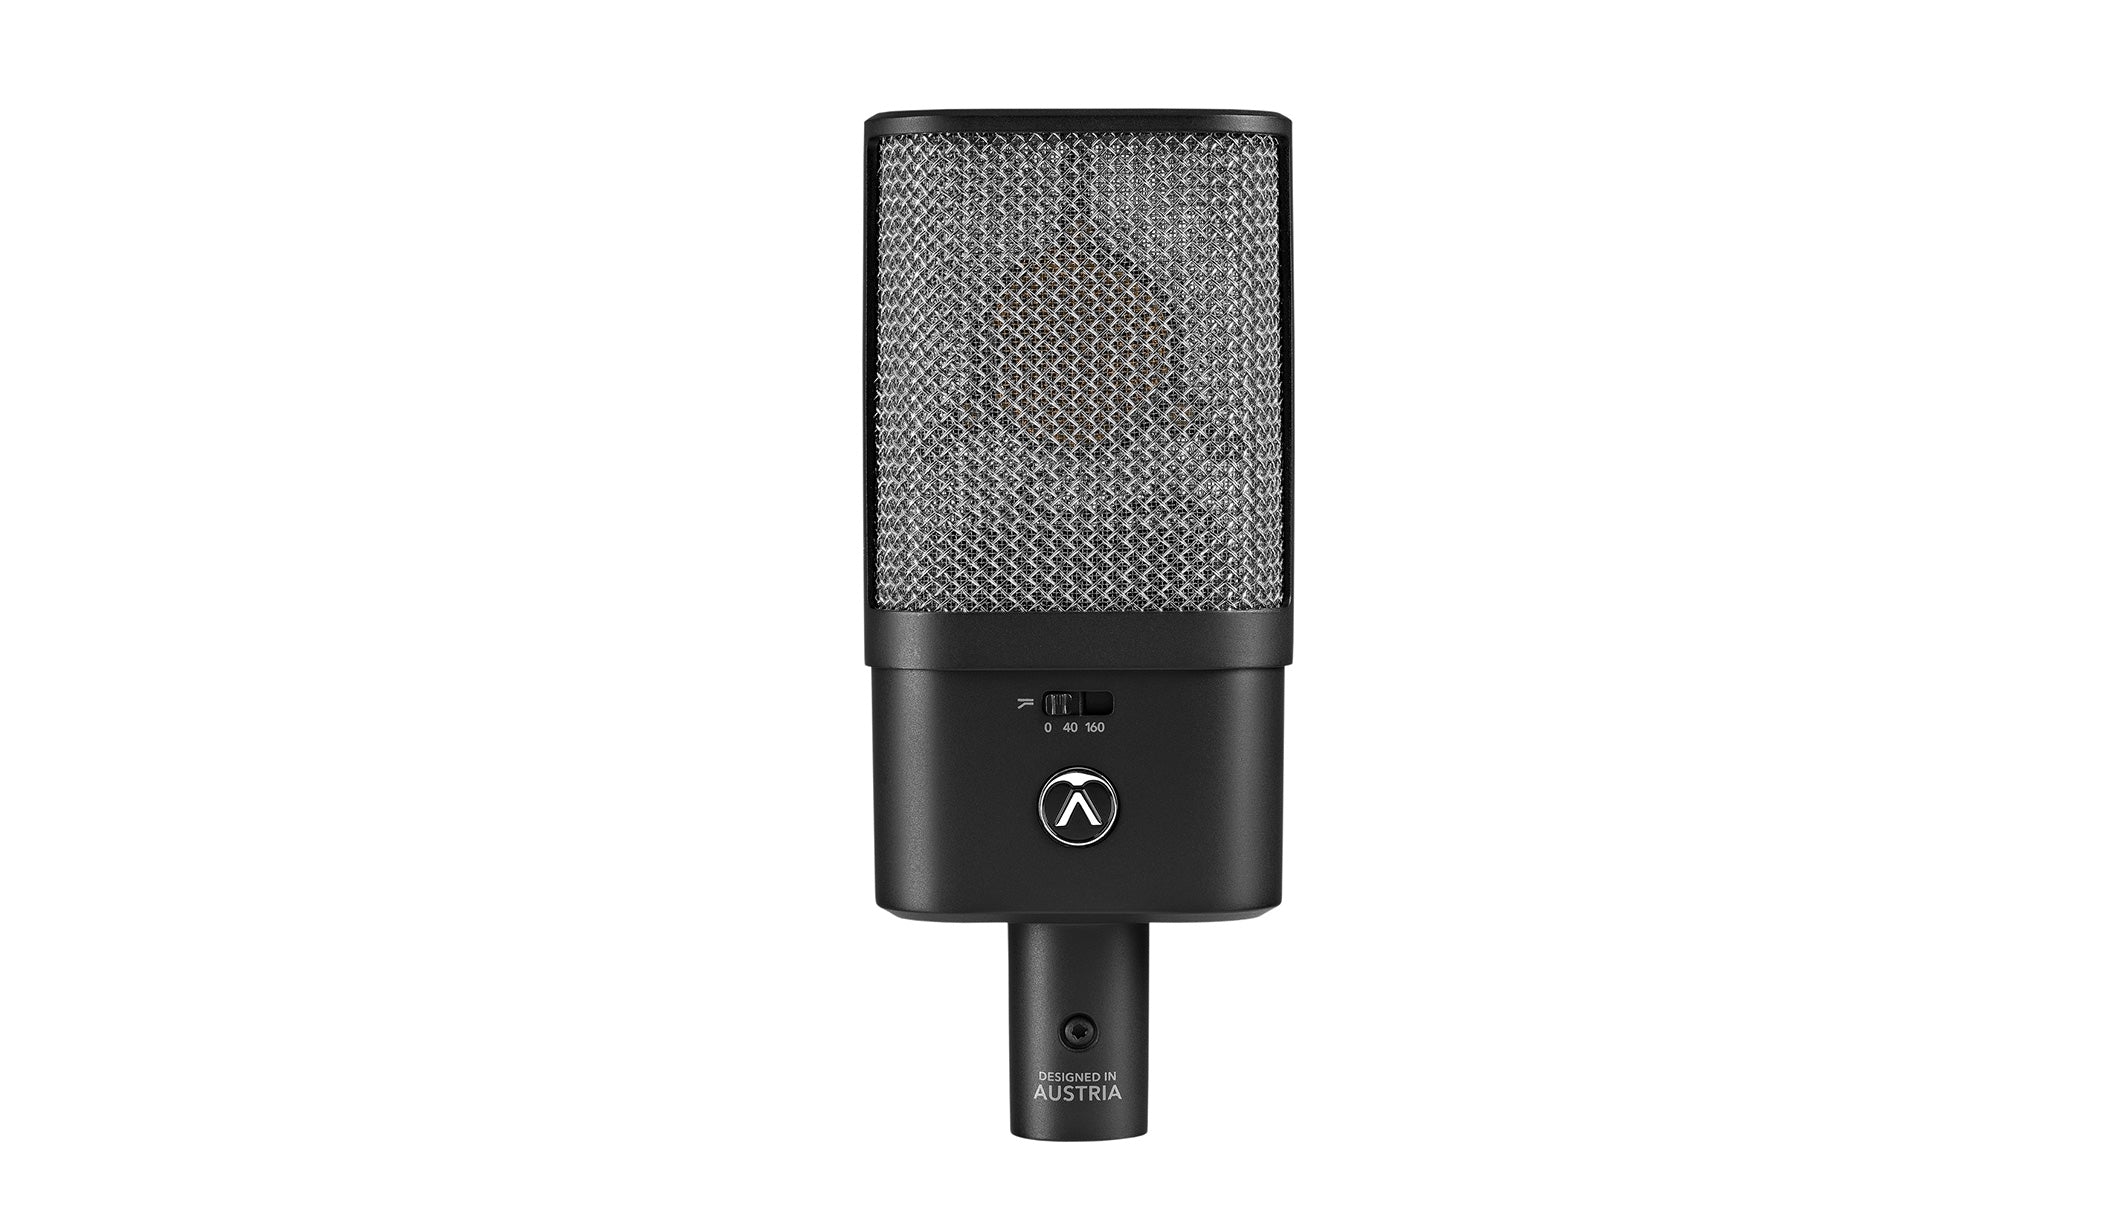 Austrian Audio Oc16 Large-Diaphragm Condenser Microphone